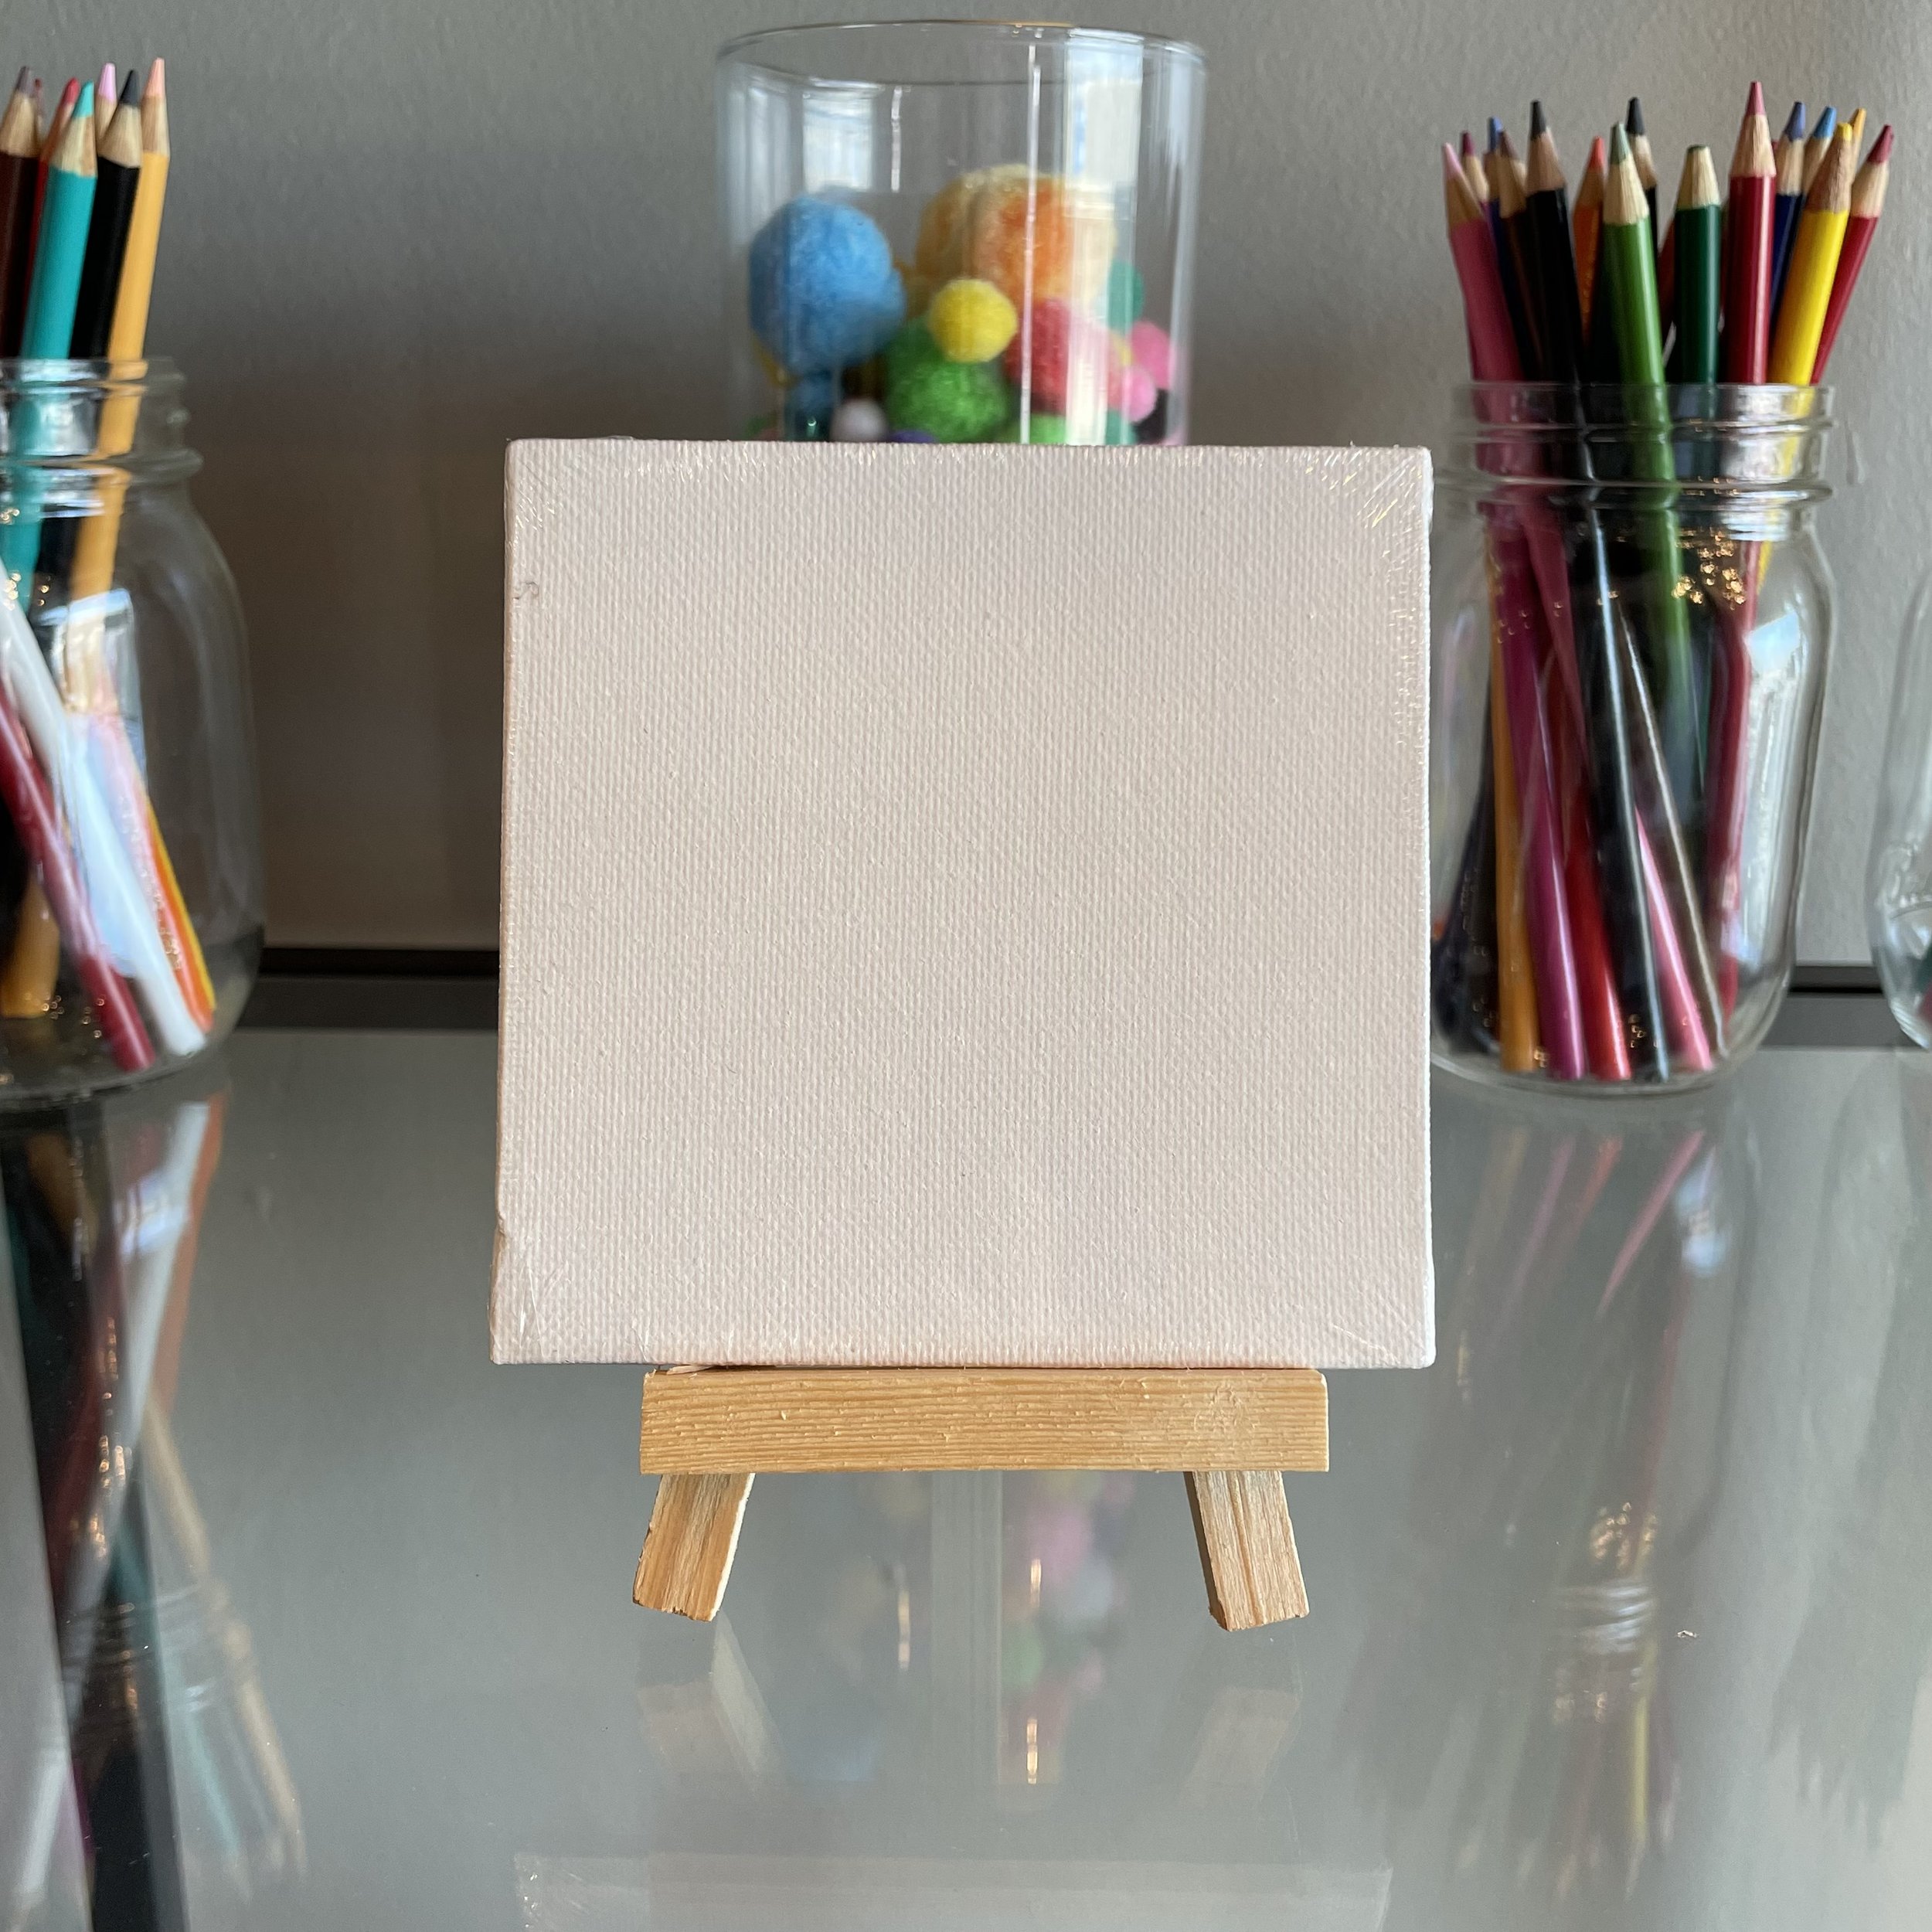 4x4'' Canvas + Easel Set ($5) — Let's Art About It